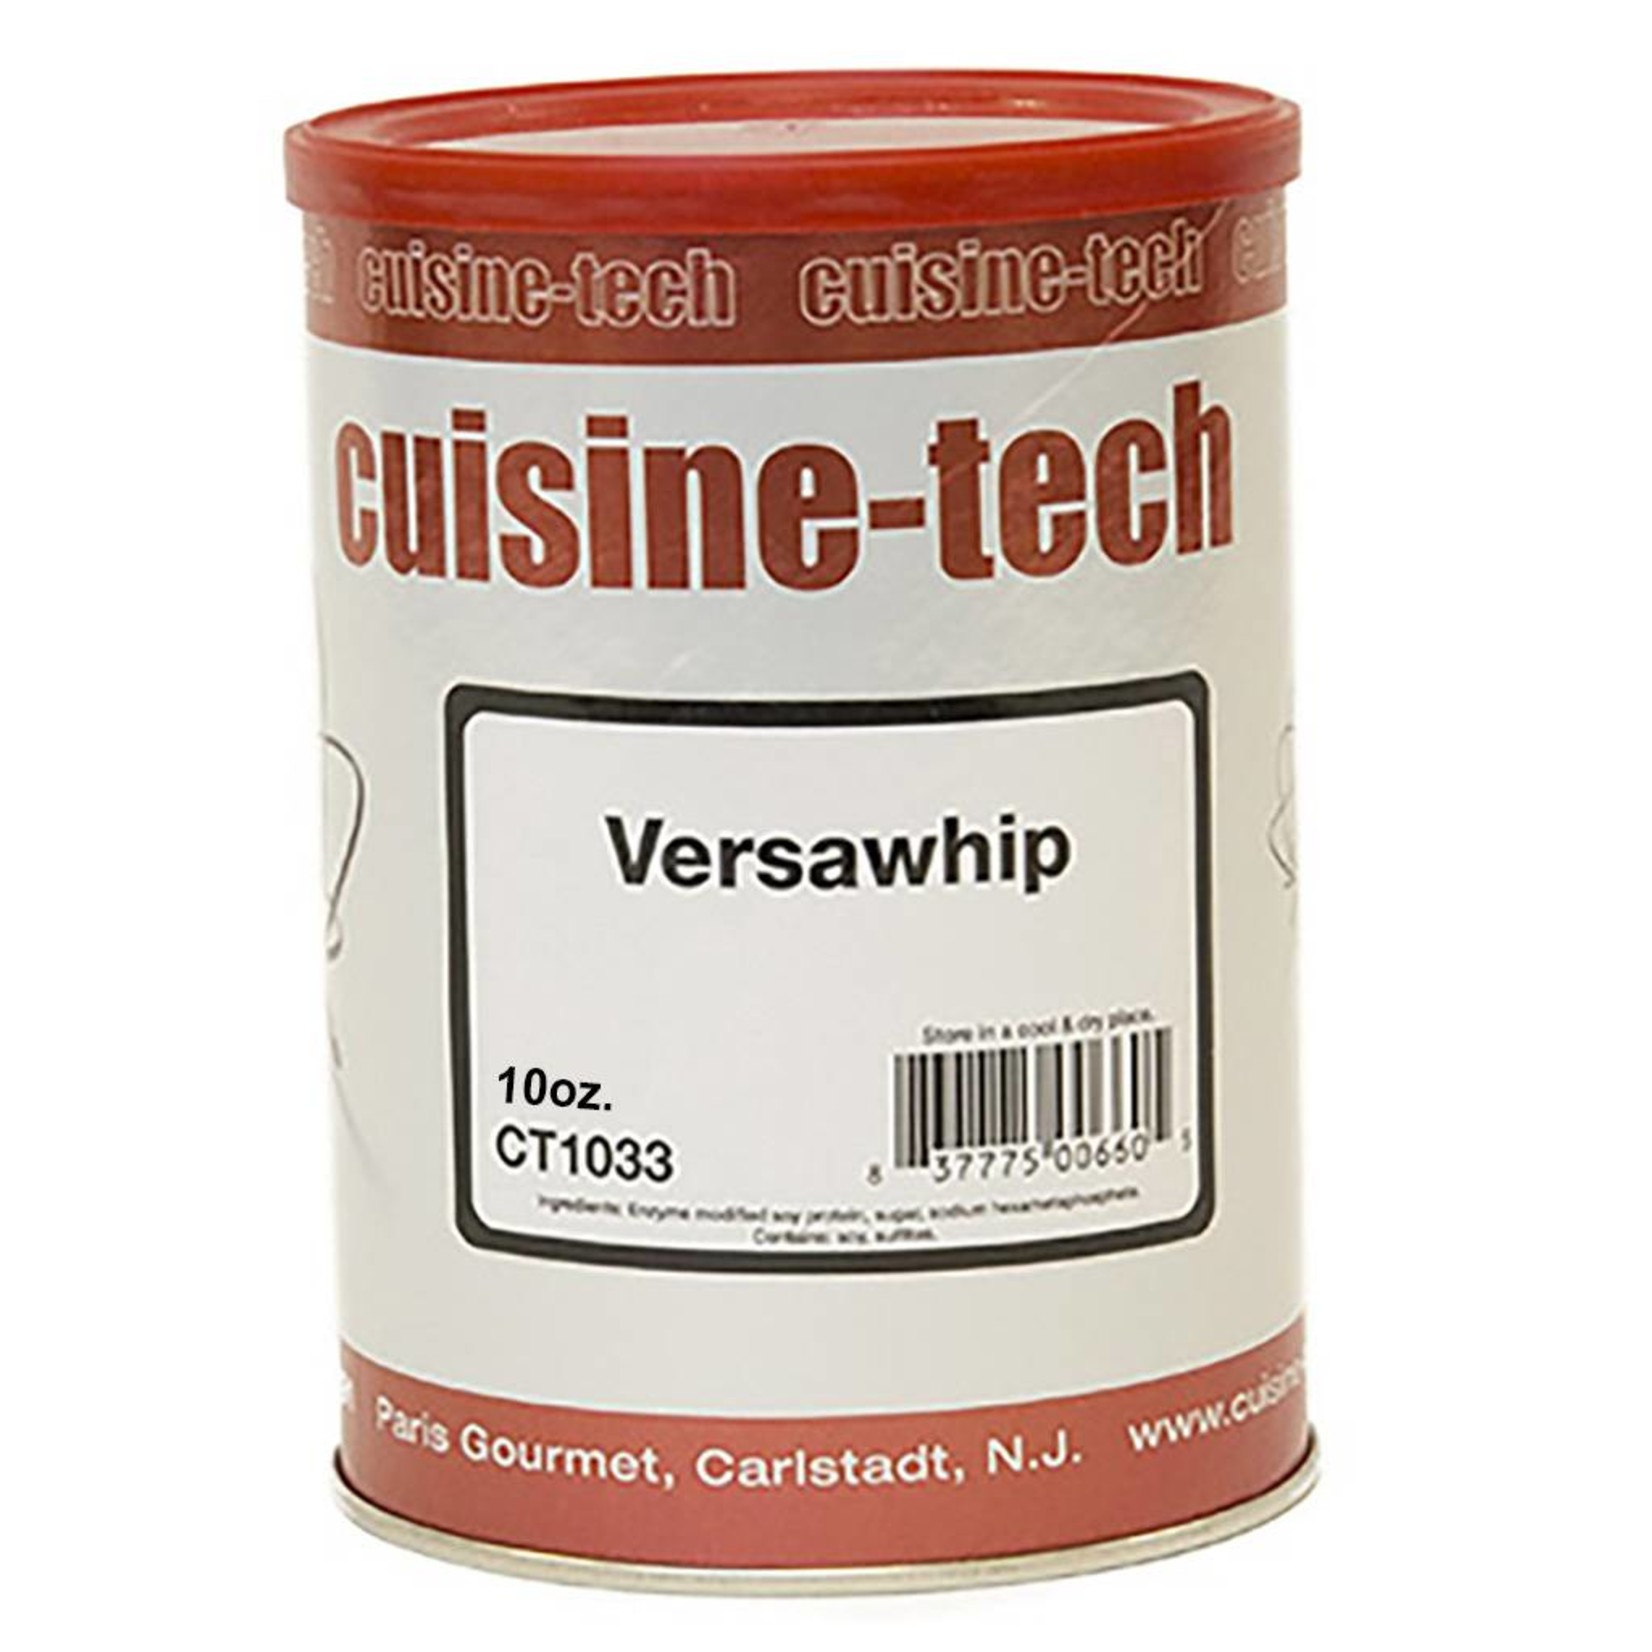 Cuisine Tech Cuisine Tech - Versawhip 620K - 10oz, CT1033